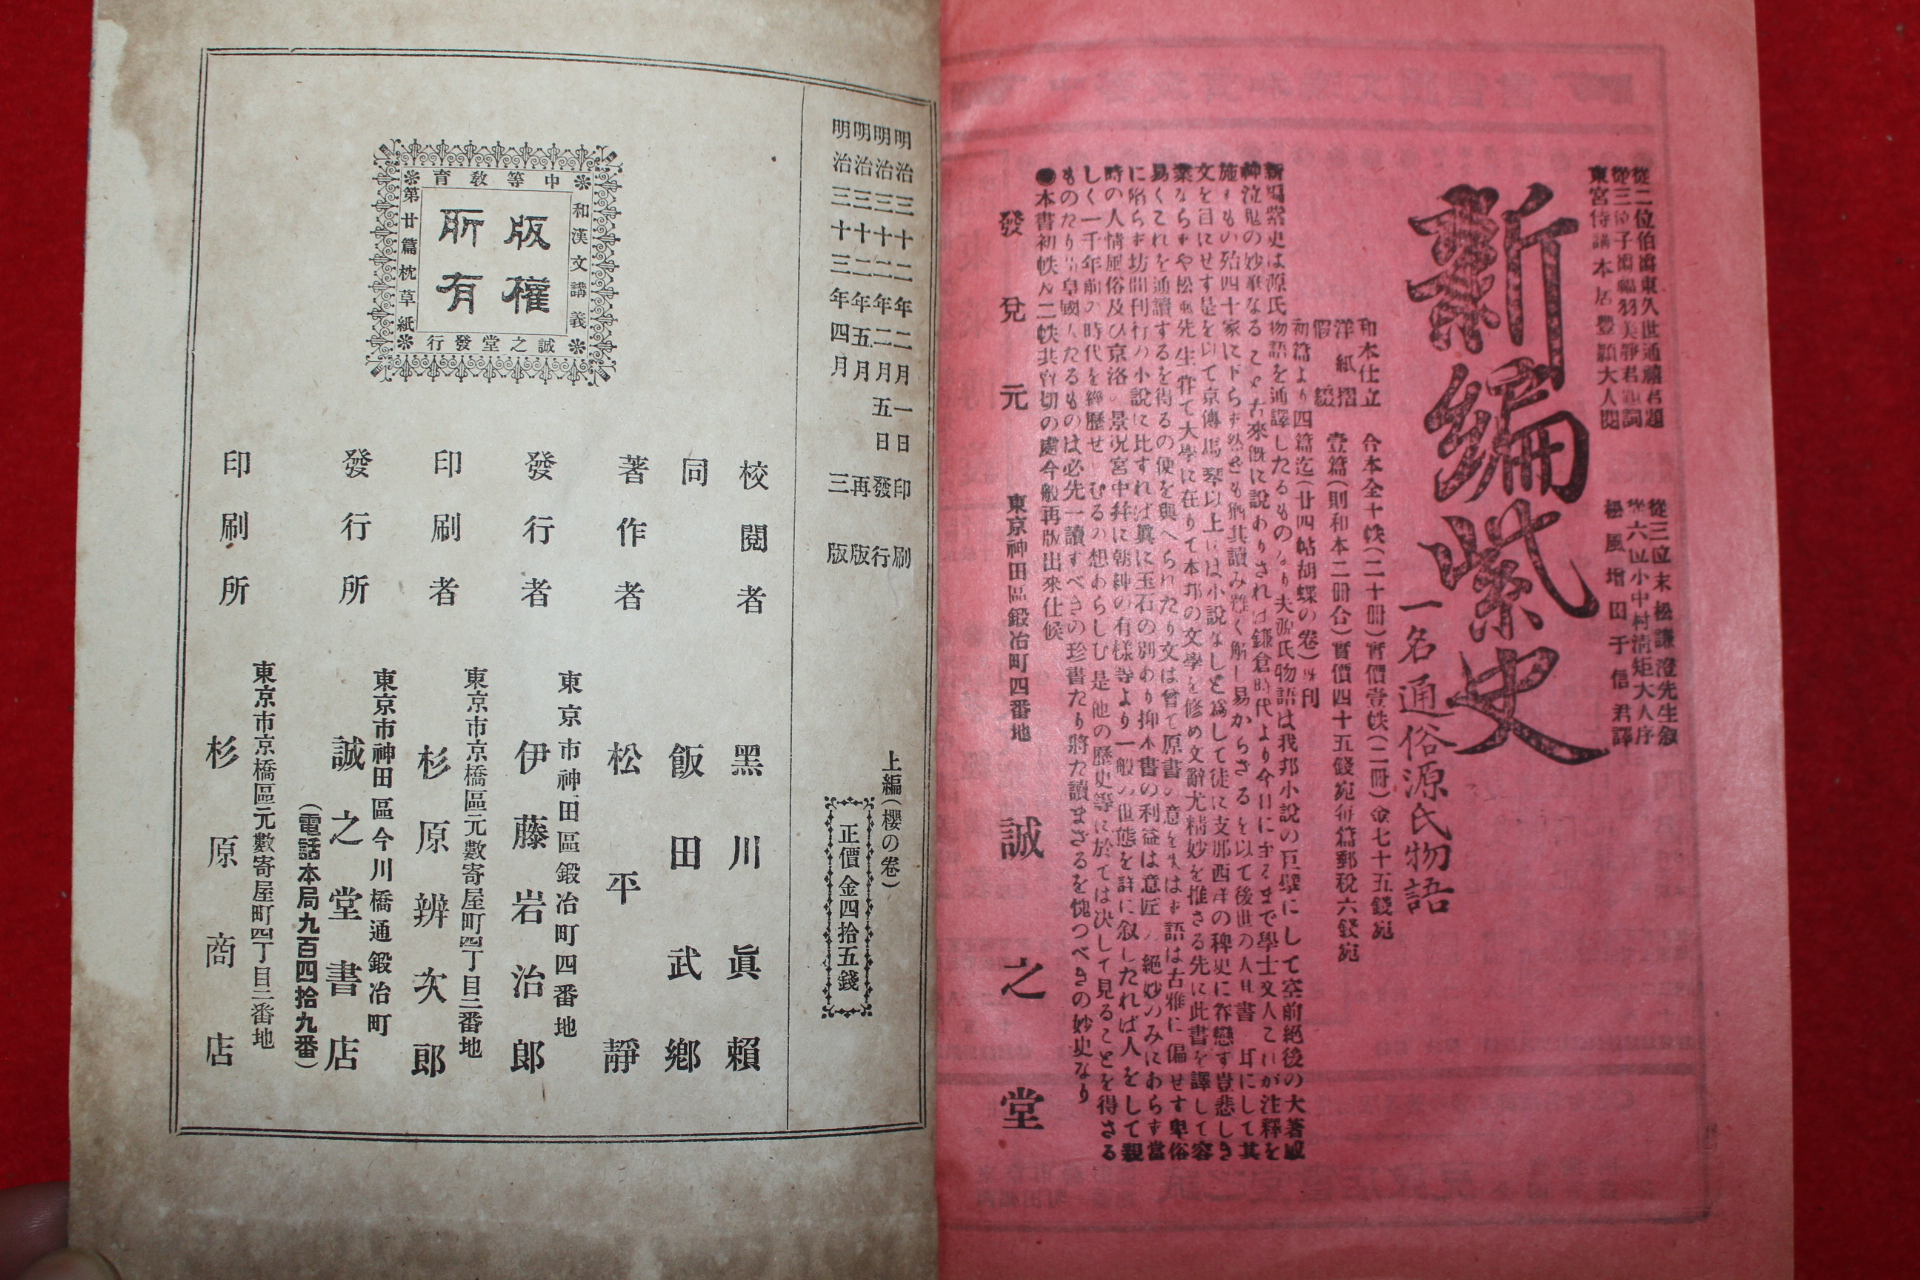 1899년(명치33년) 침초장상해(枕草子詳解)